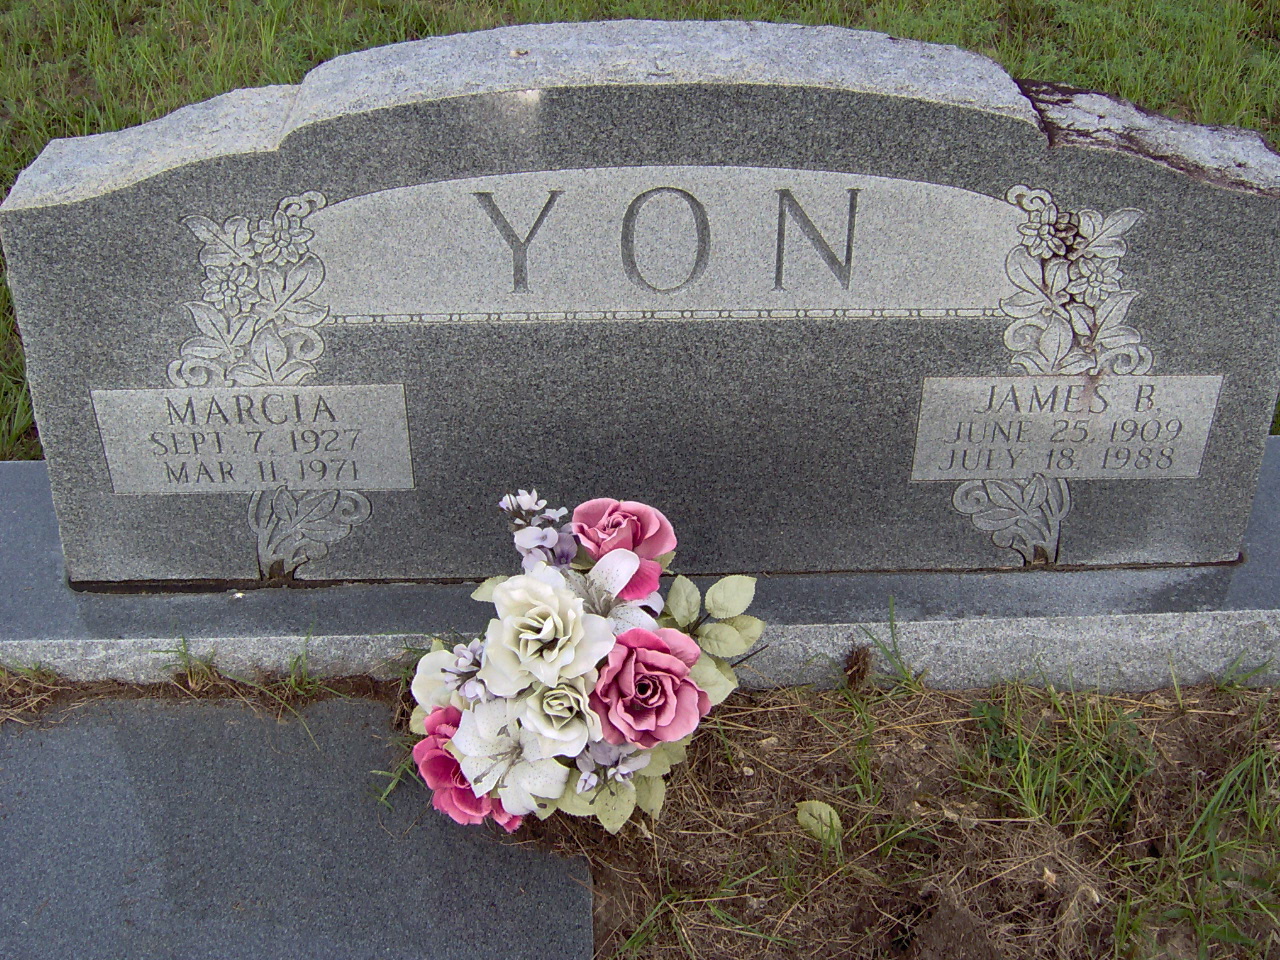 Headstone for Yon, James B.